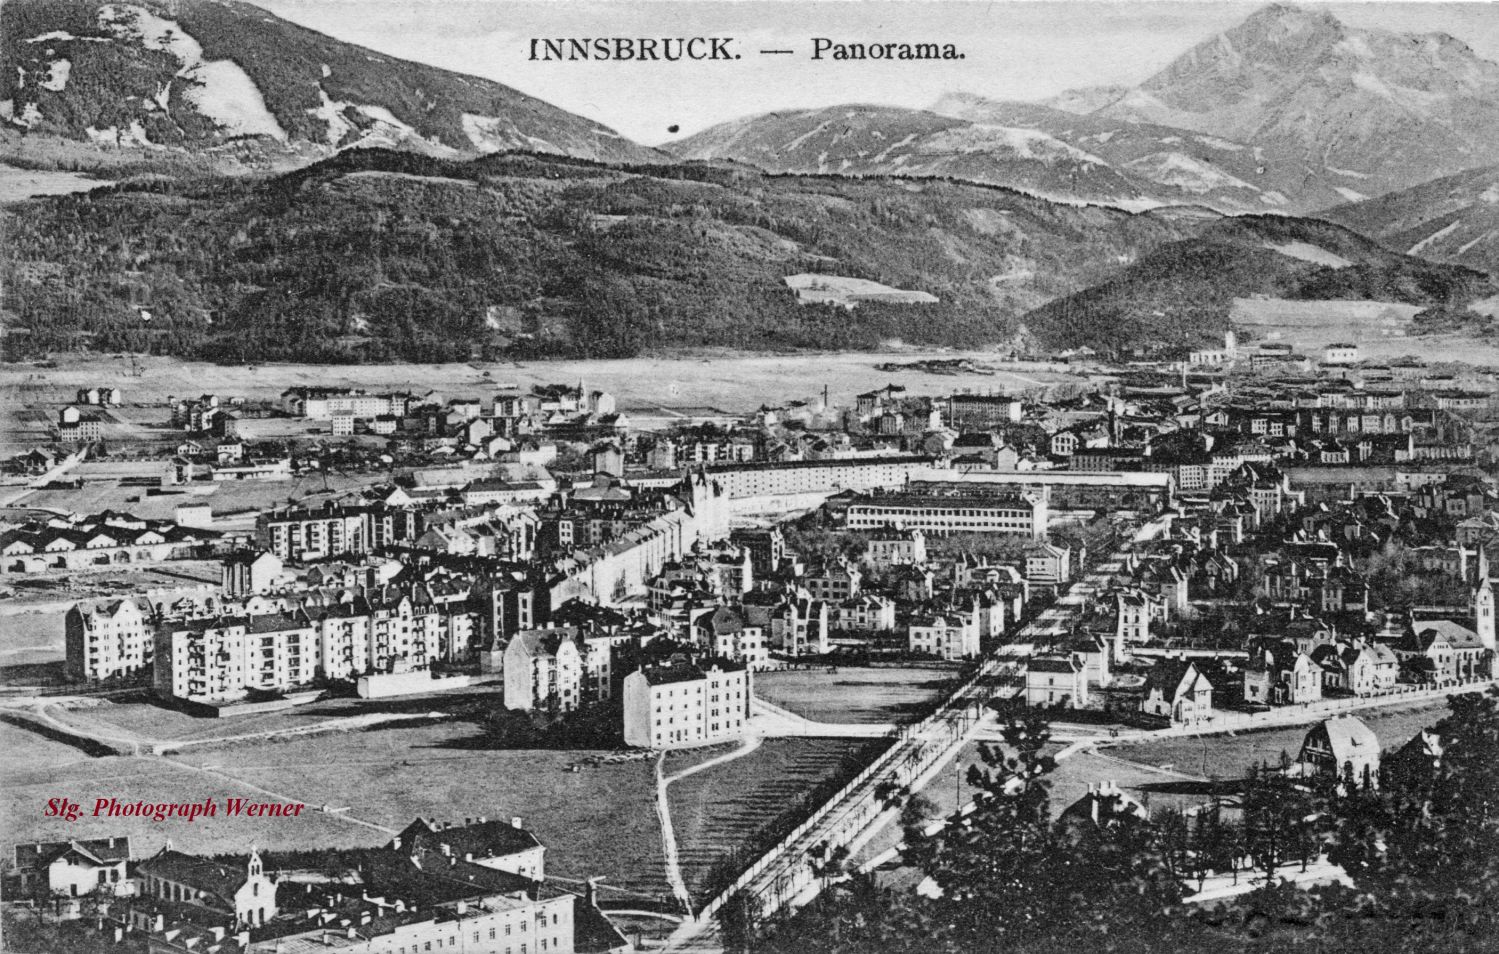 Innsbruck Saggen